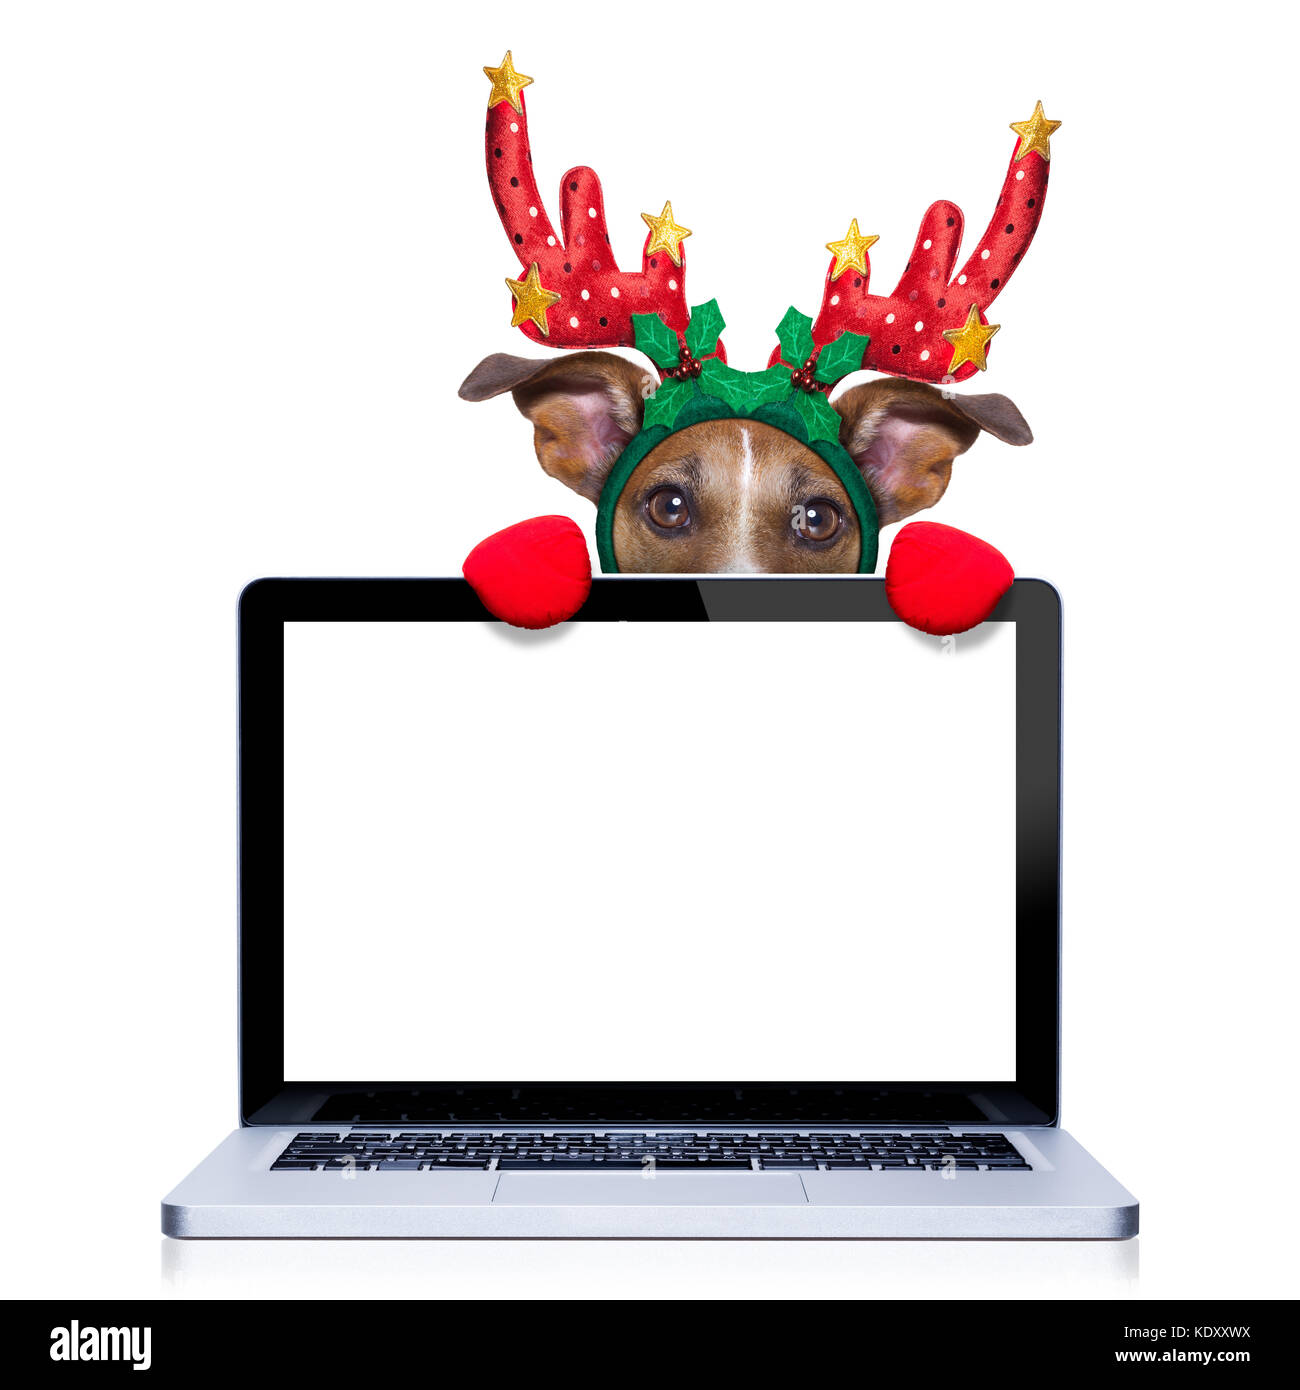 Weihnachten Hund mit Rentier Kostüm hinter einem Laptop Computer pc  Bildschirm, auf weißem Hintergrund Stockfotografie - Alamy